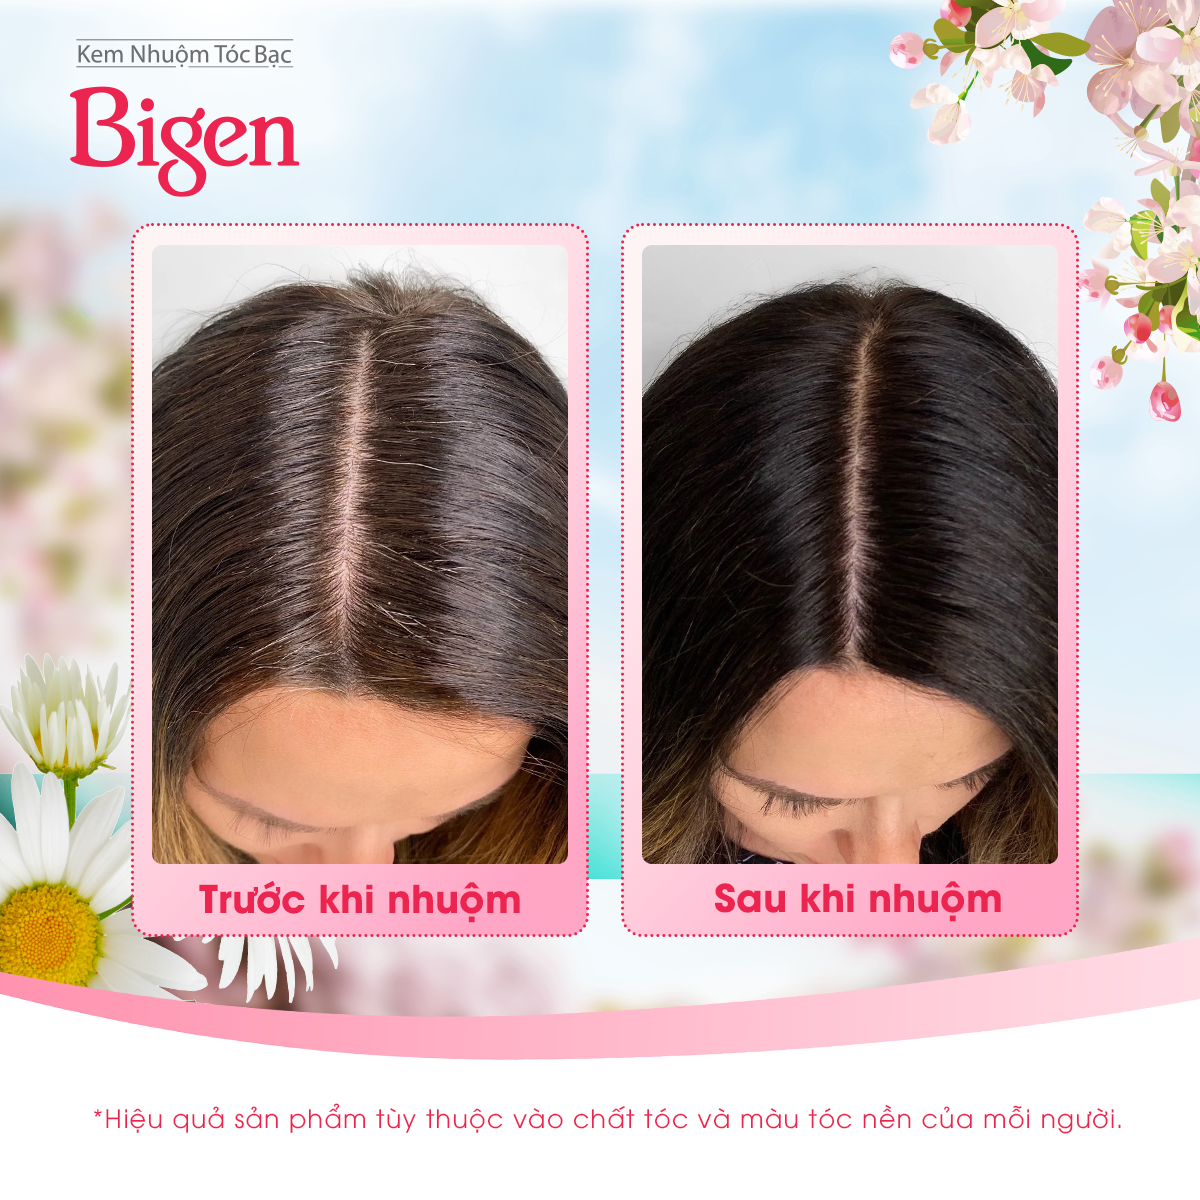 Thuốc nhuộm dưỡng tóc phủ bạc thảo dược Bigen Silk Touch Thương hiệu Nhật Bản Sắc Màu trẻ trung 80ml dạng kem